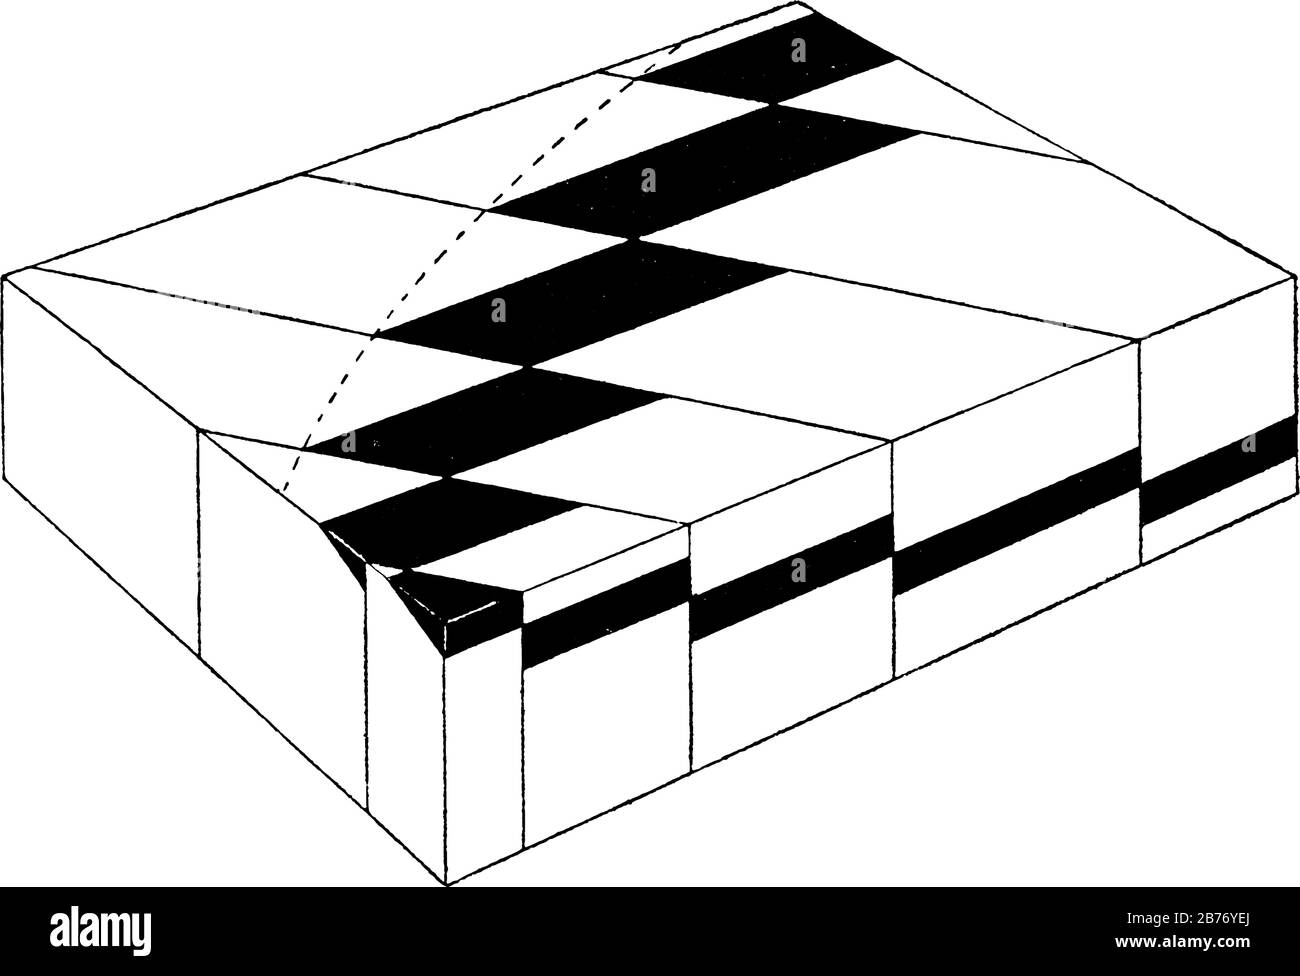 Représentation typique de la compensation crescentitique des affleurements (exposition visible du substrat rocheux) due à la projection croissante de blocs orgaraphiques, vint Illustration de Vecteur